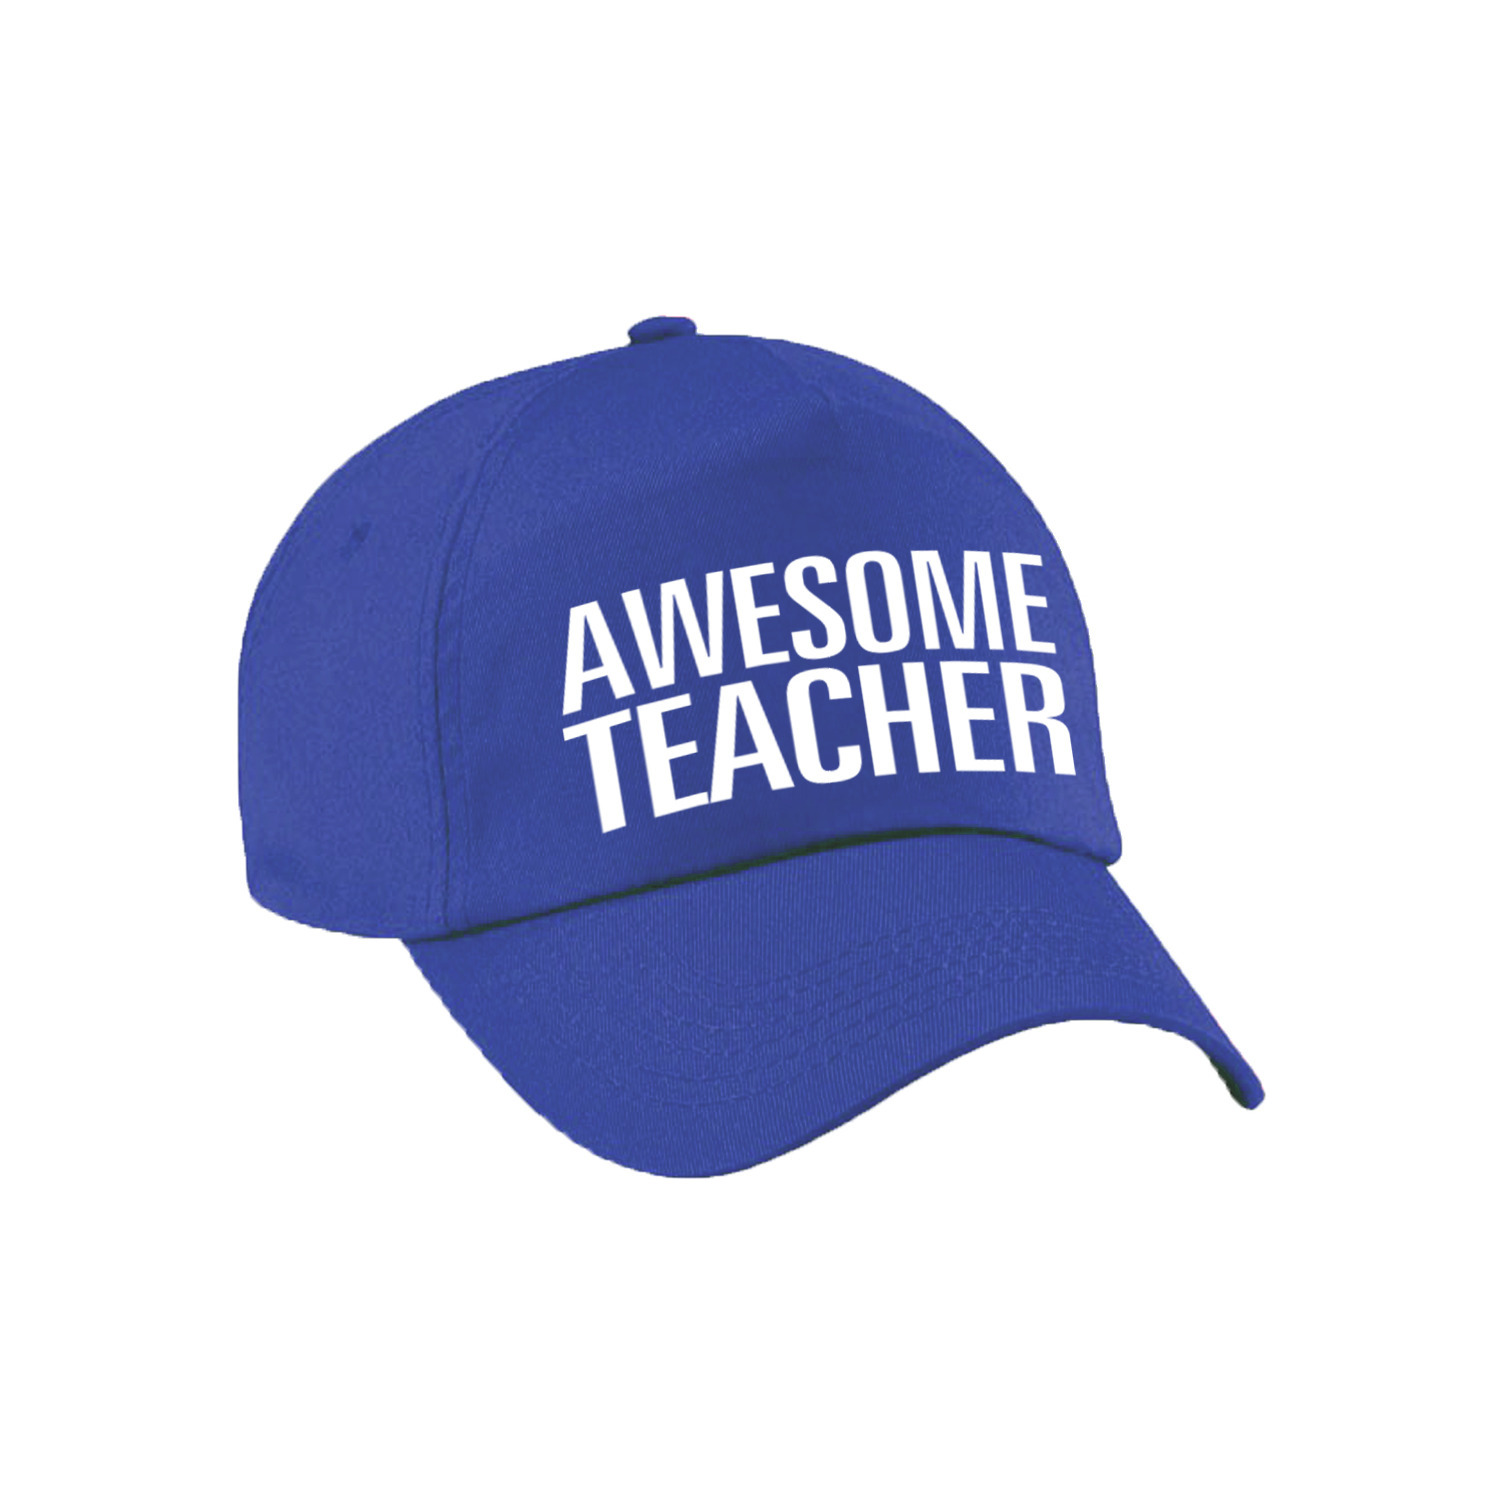 Awesome teacher pet / cap voor leraar / lerares blauw voor dames en heren Top Merken Winkel